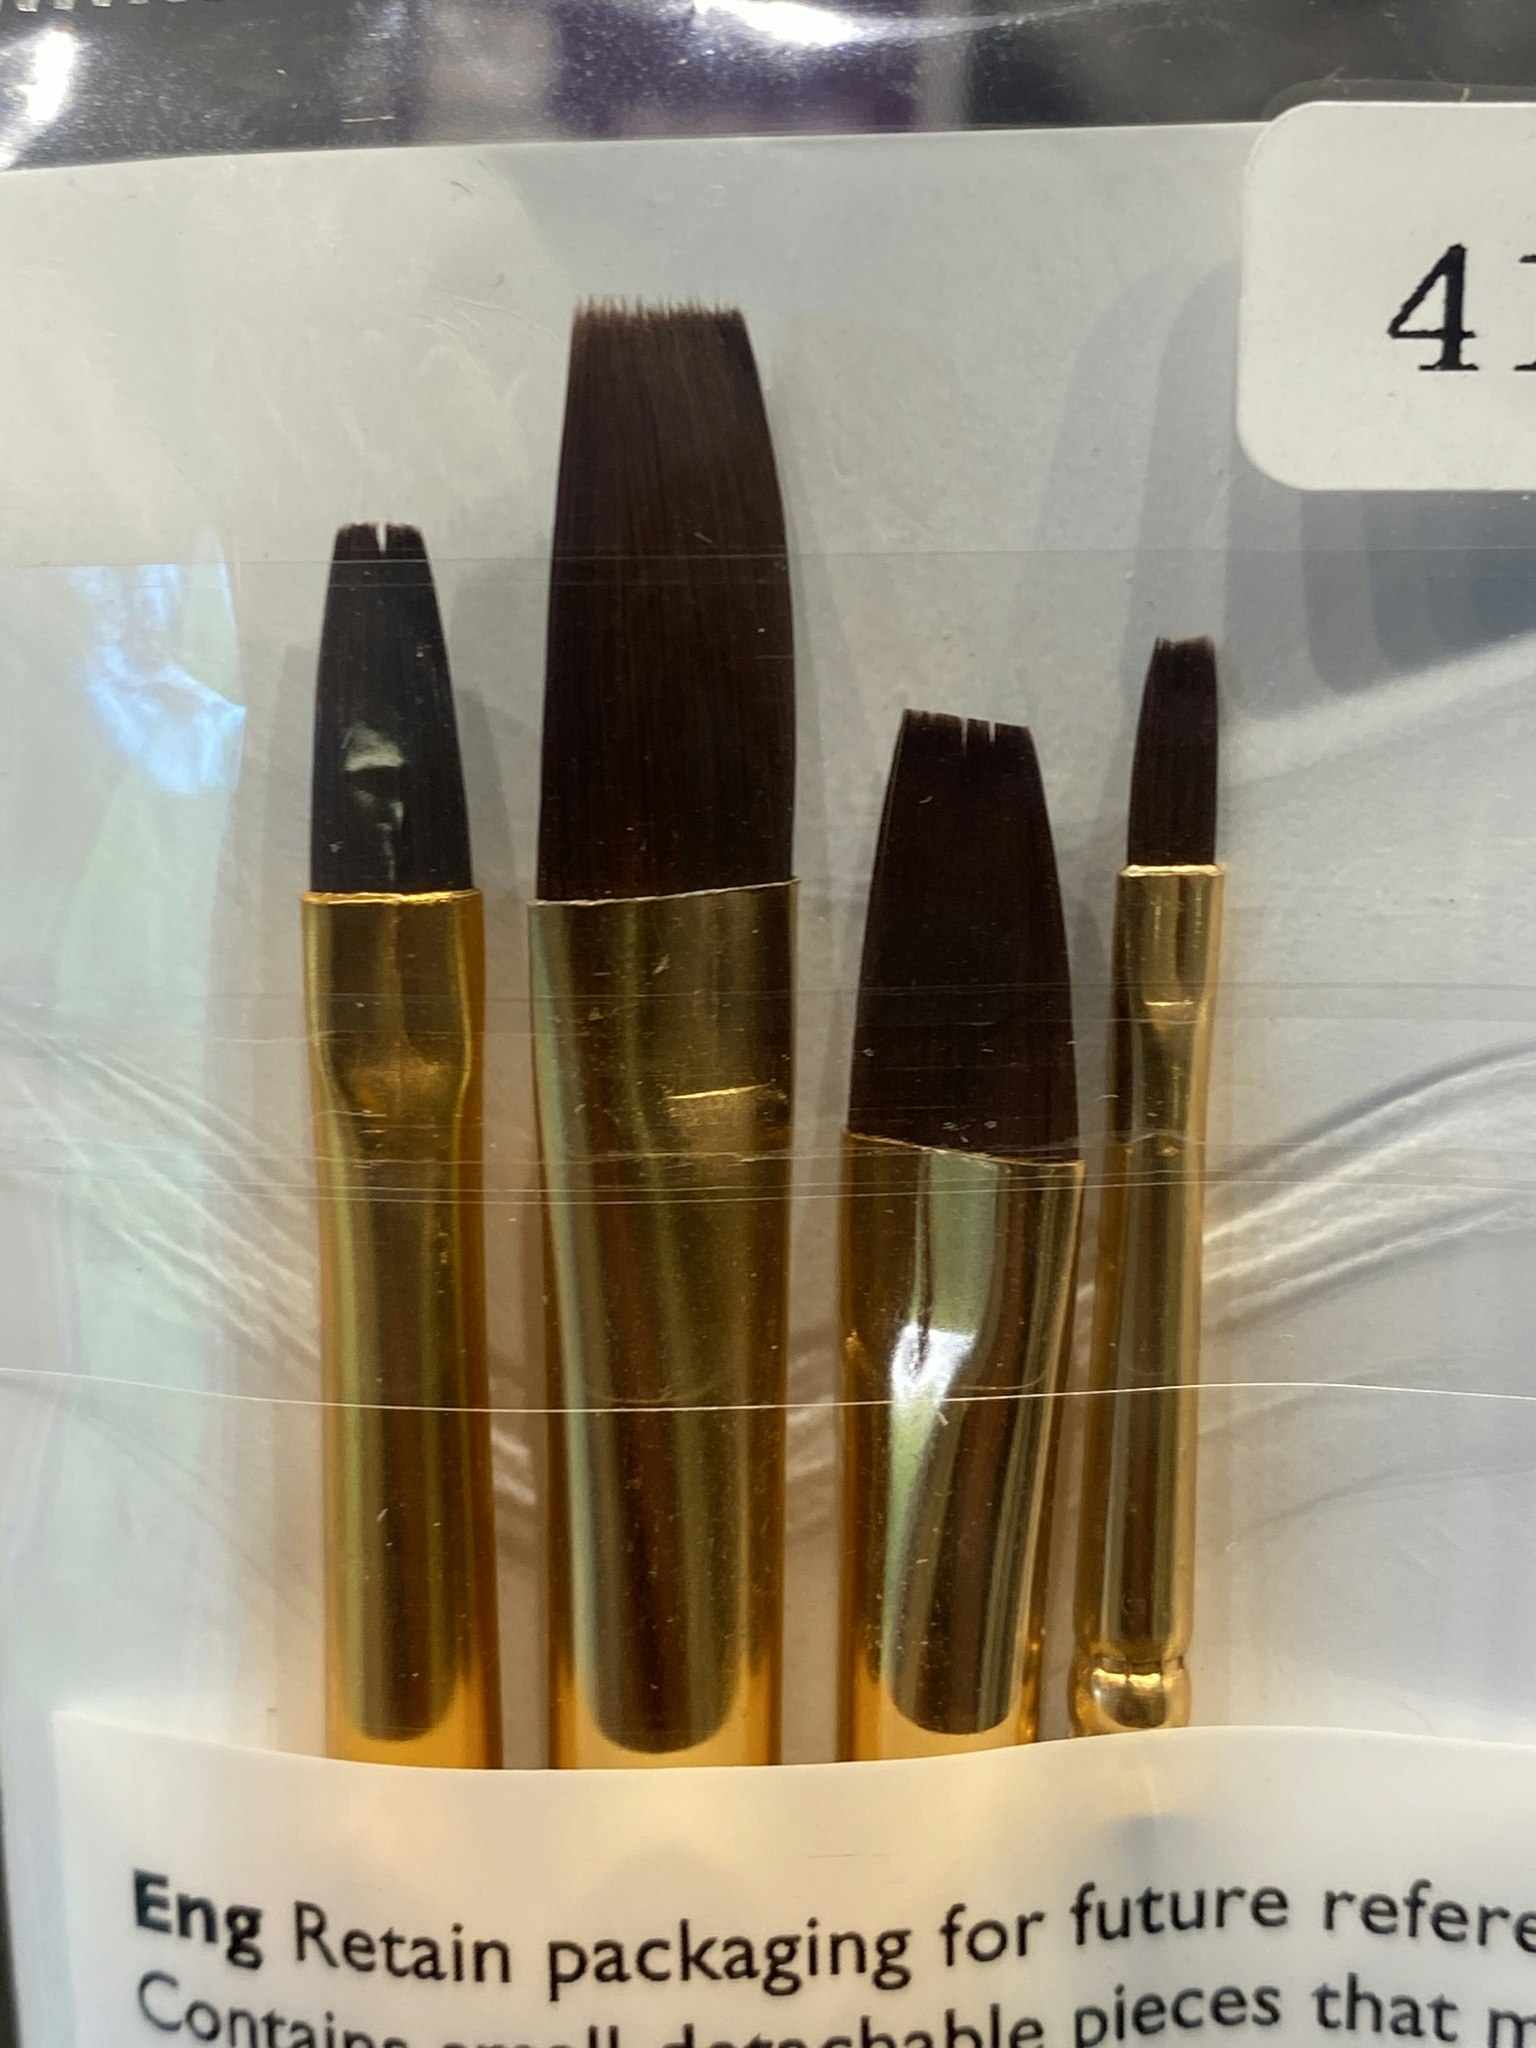 Flat Brushes - Pensel-set med 4 olika, Syntet, Stl Pensel 3, 5, 7, 10 mm från Humbrol